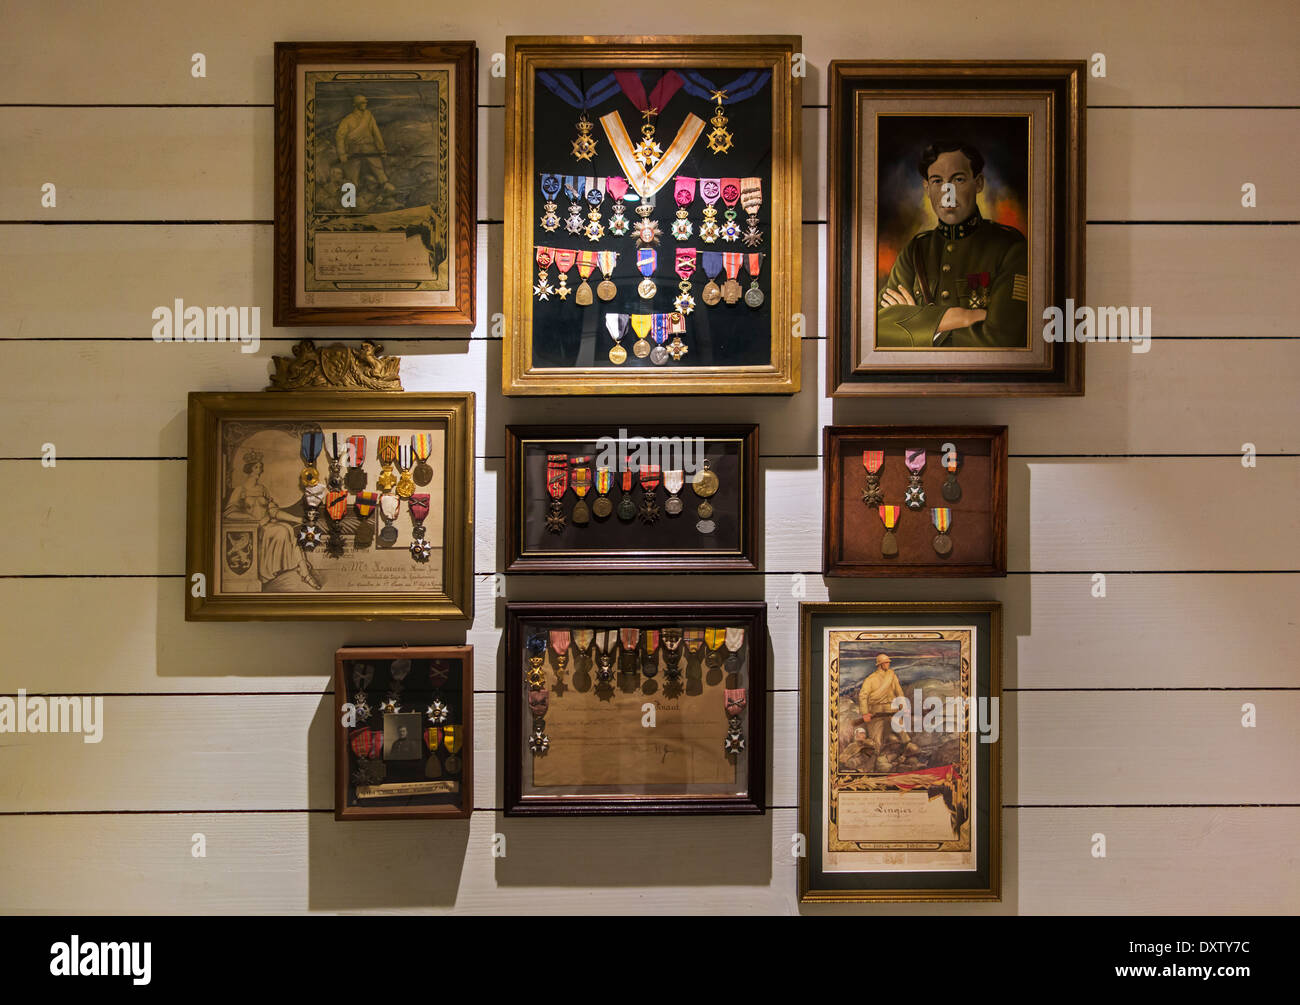 Sammlung von militärischen Orden des belgischen ersten Weltkrieg Soldaten im Museum im Inneren der IJzertoren / Yser Turm, Belgien Stockfoto